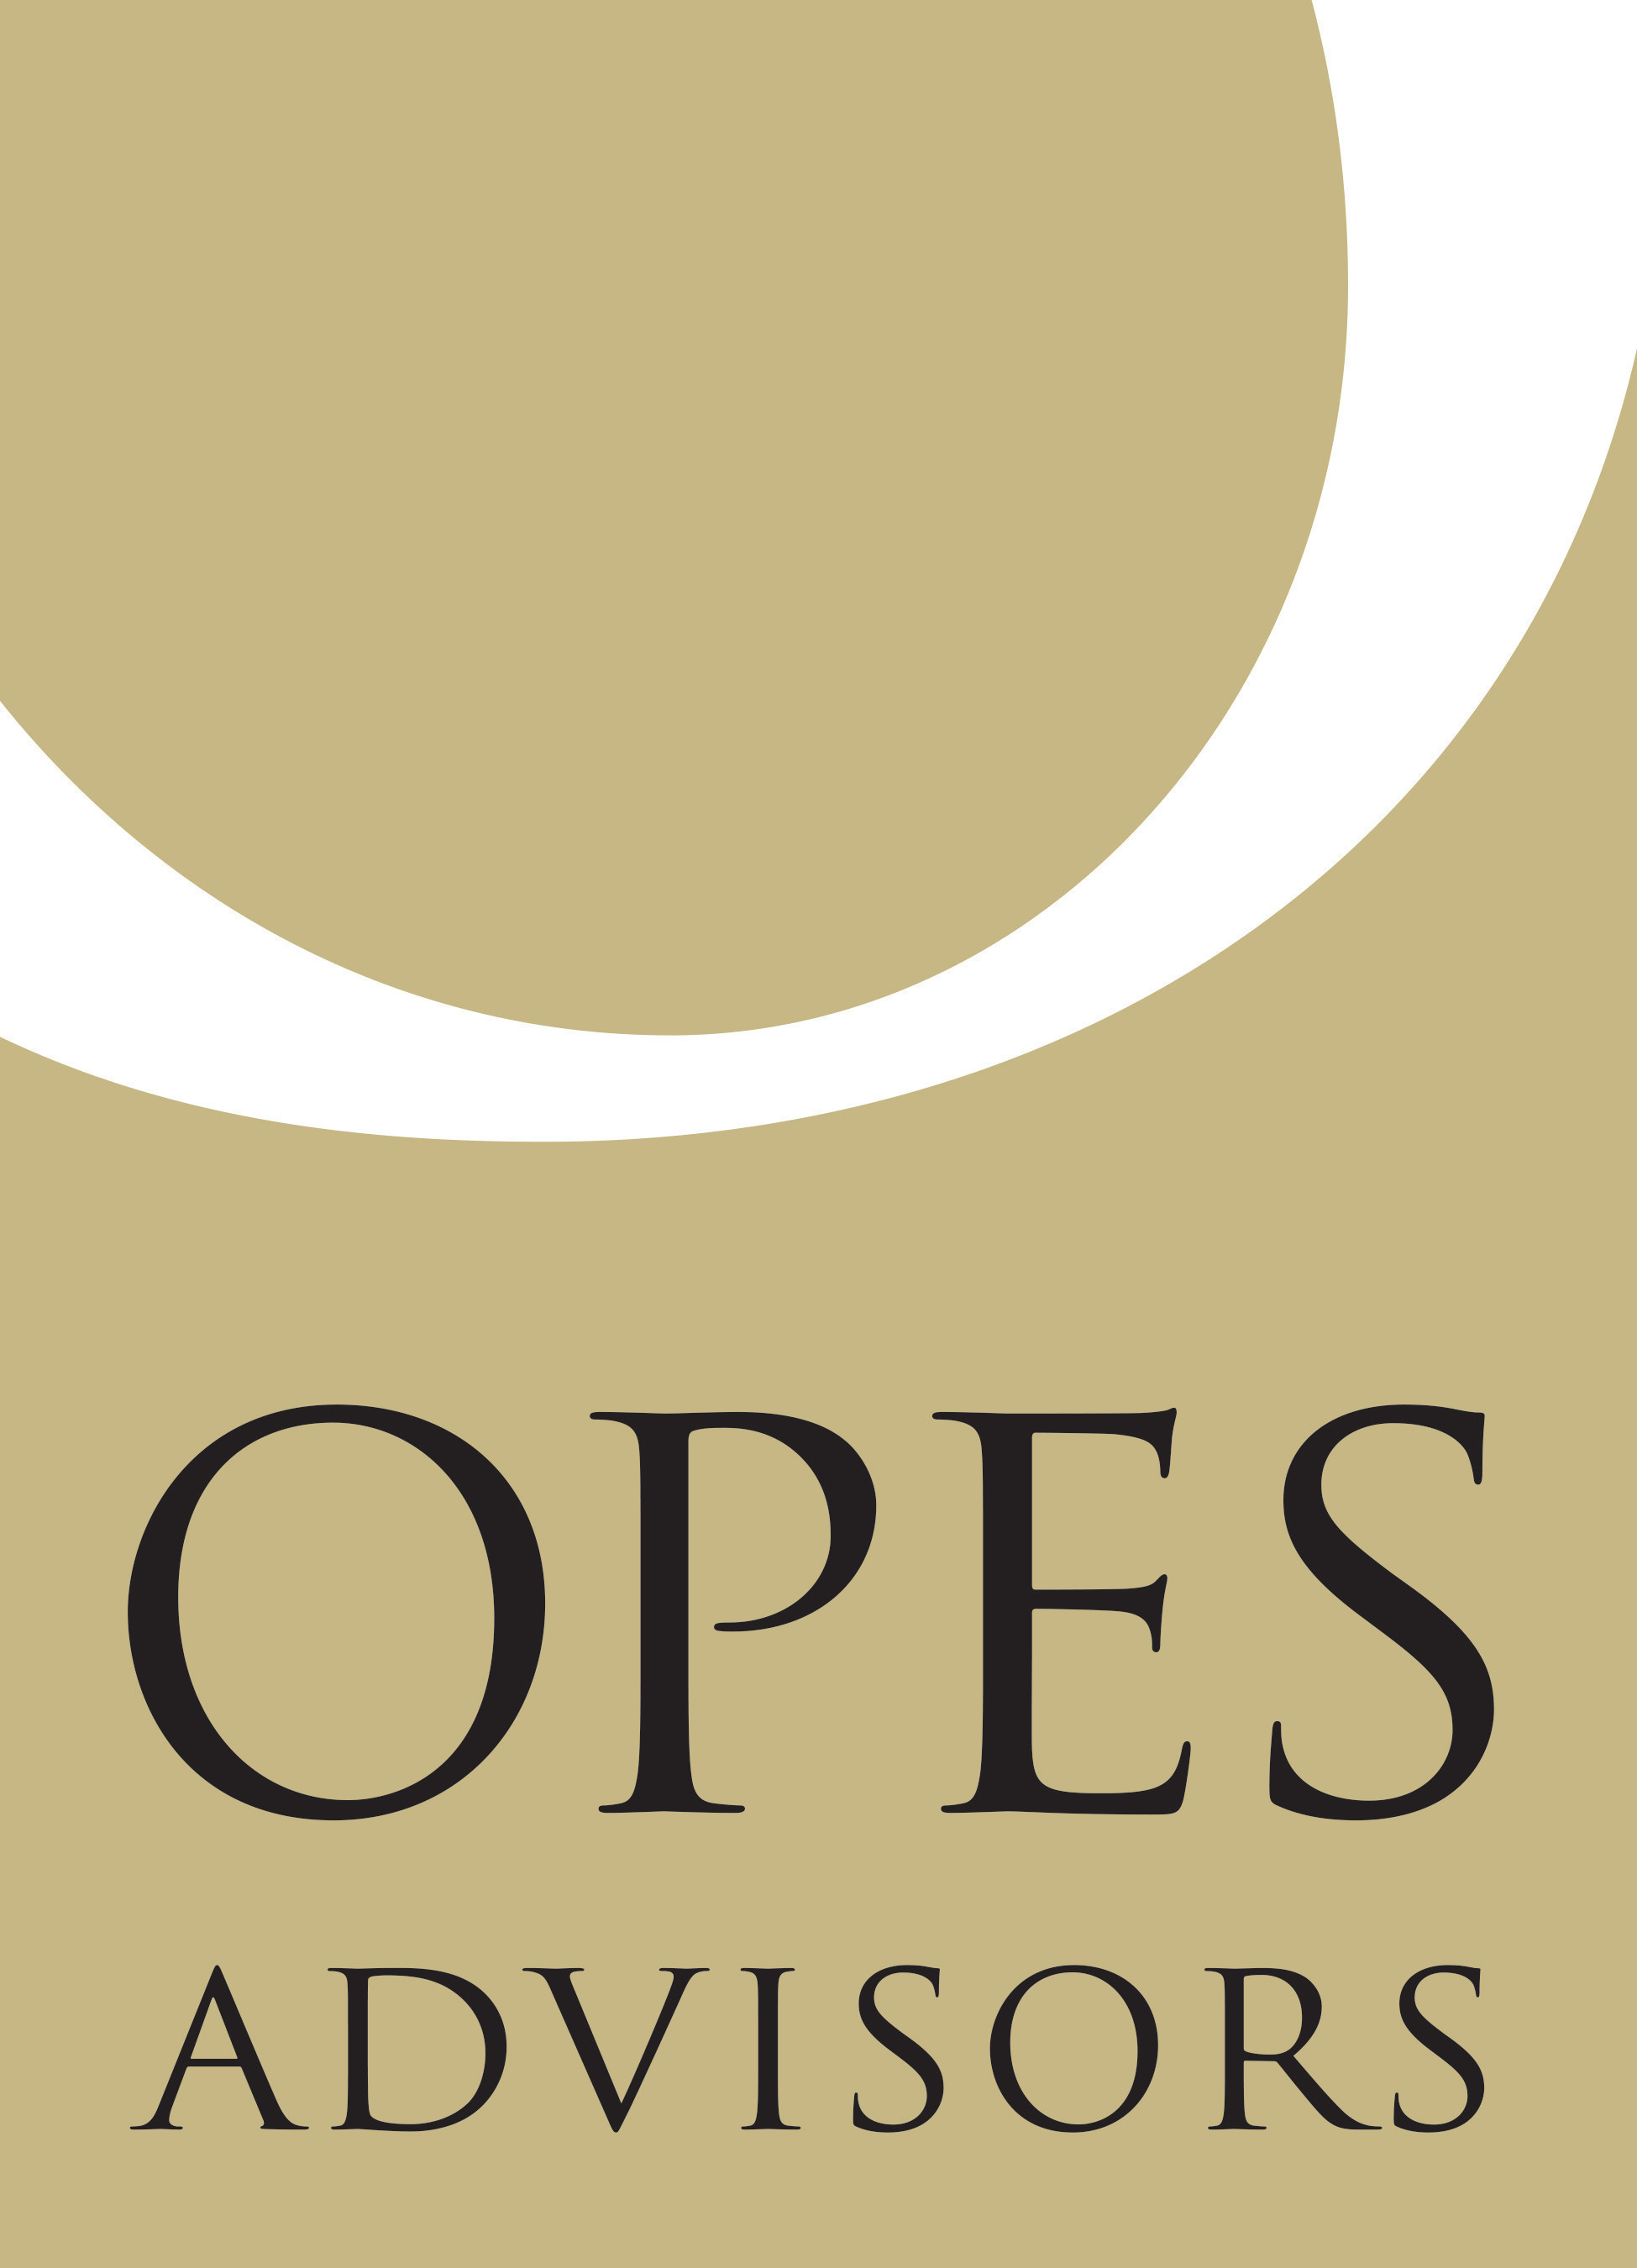 Opes Advisors